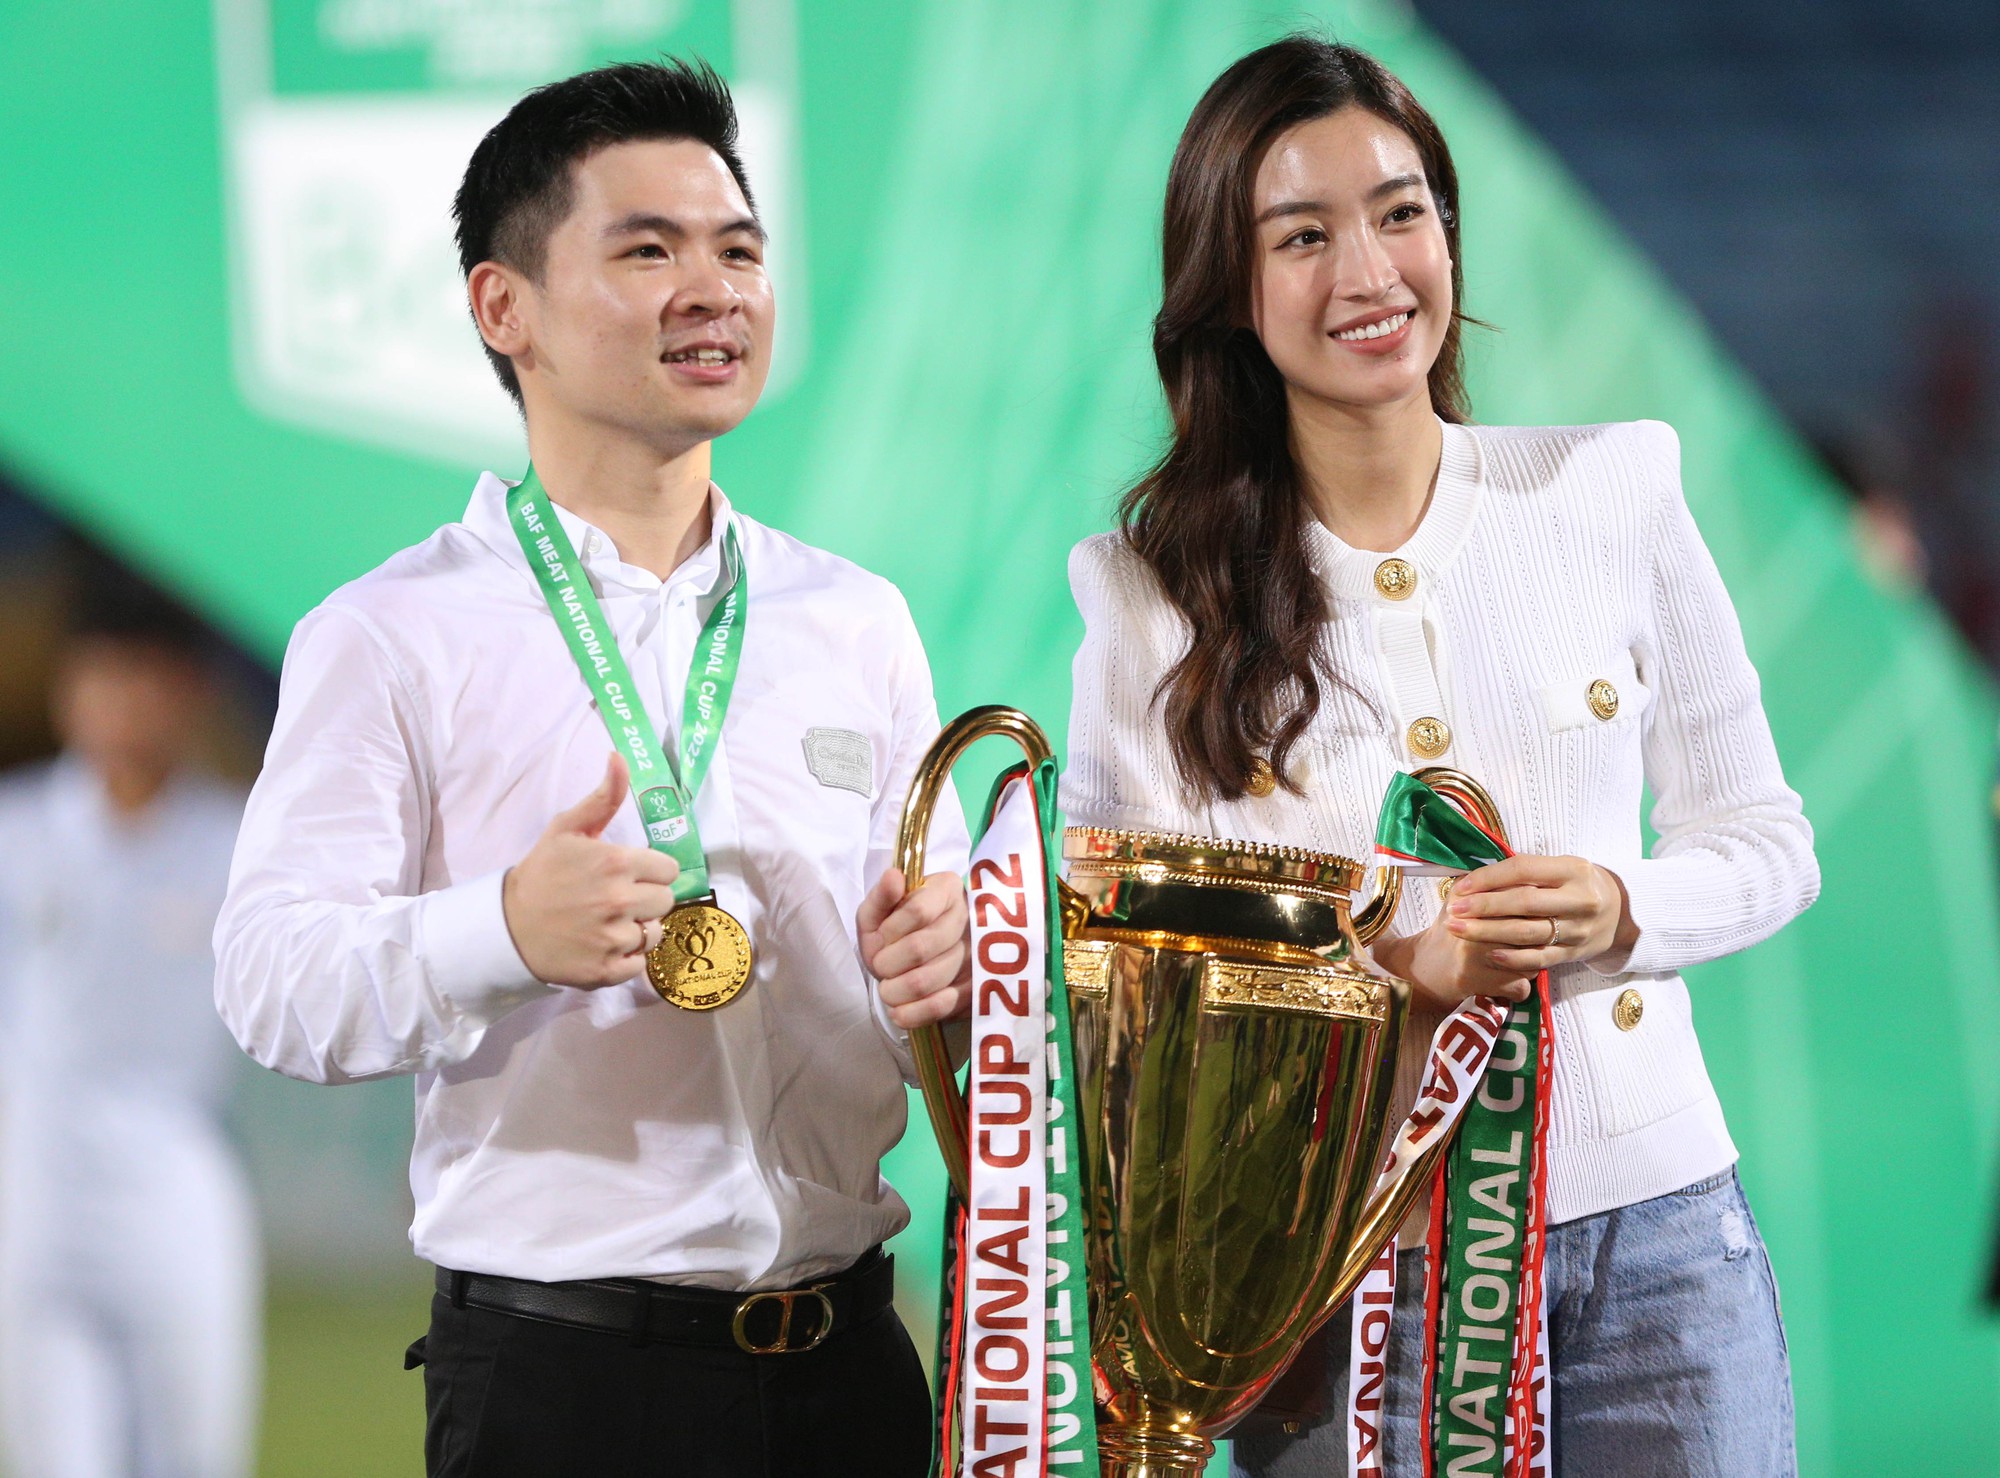 Hoa hậu Đỗ Mỹ Linh nâng Cup vô địch cùng Chủ tịch CLB Hà Nội - Ảnh 1.